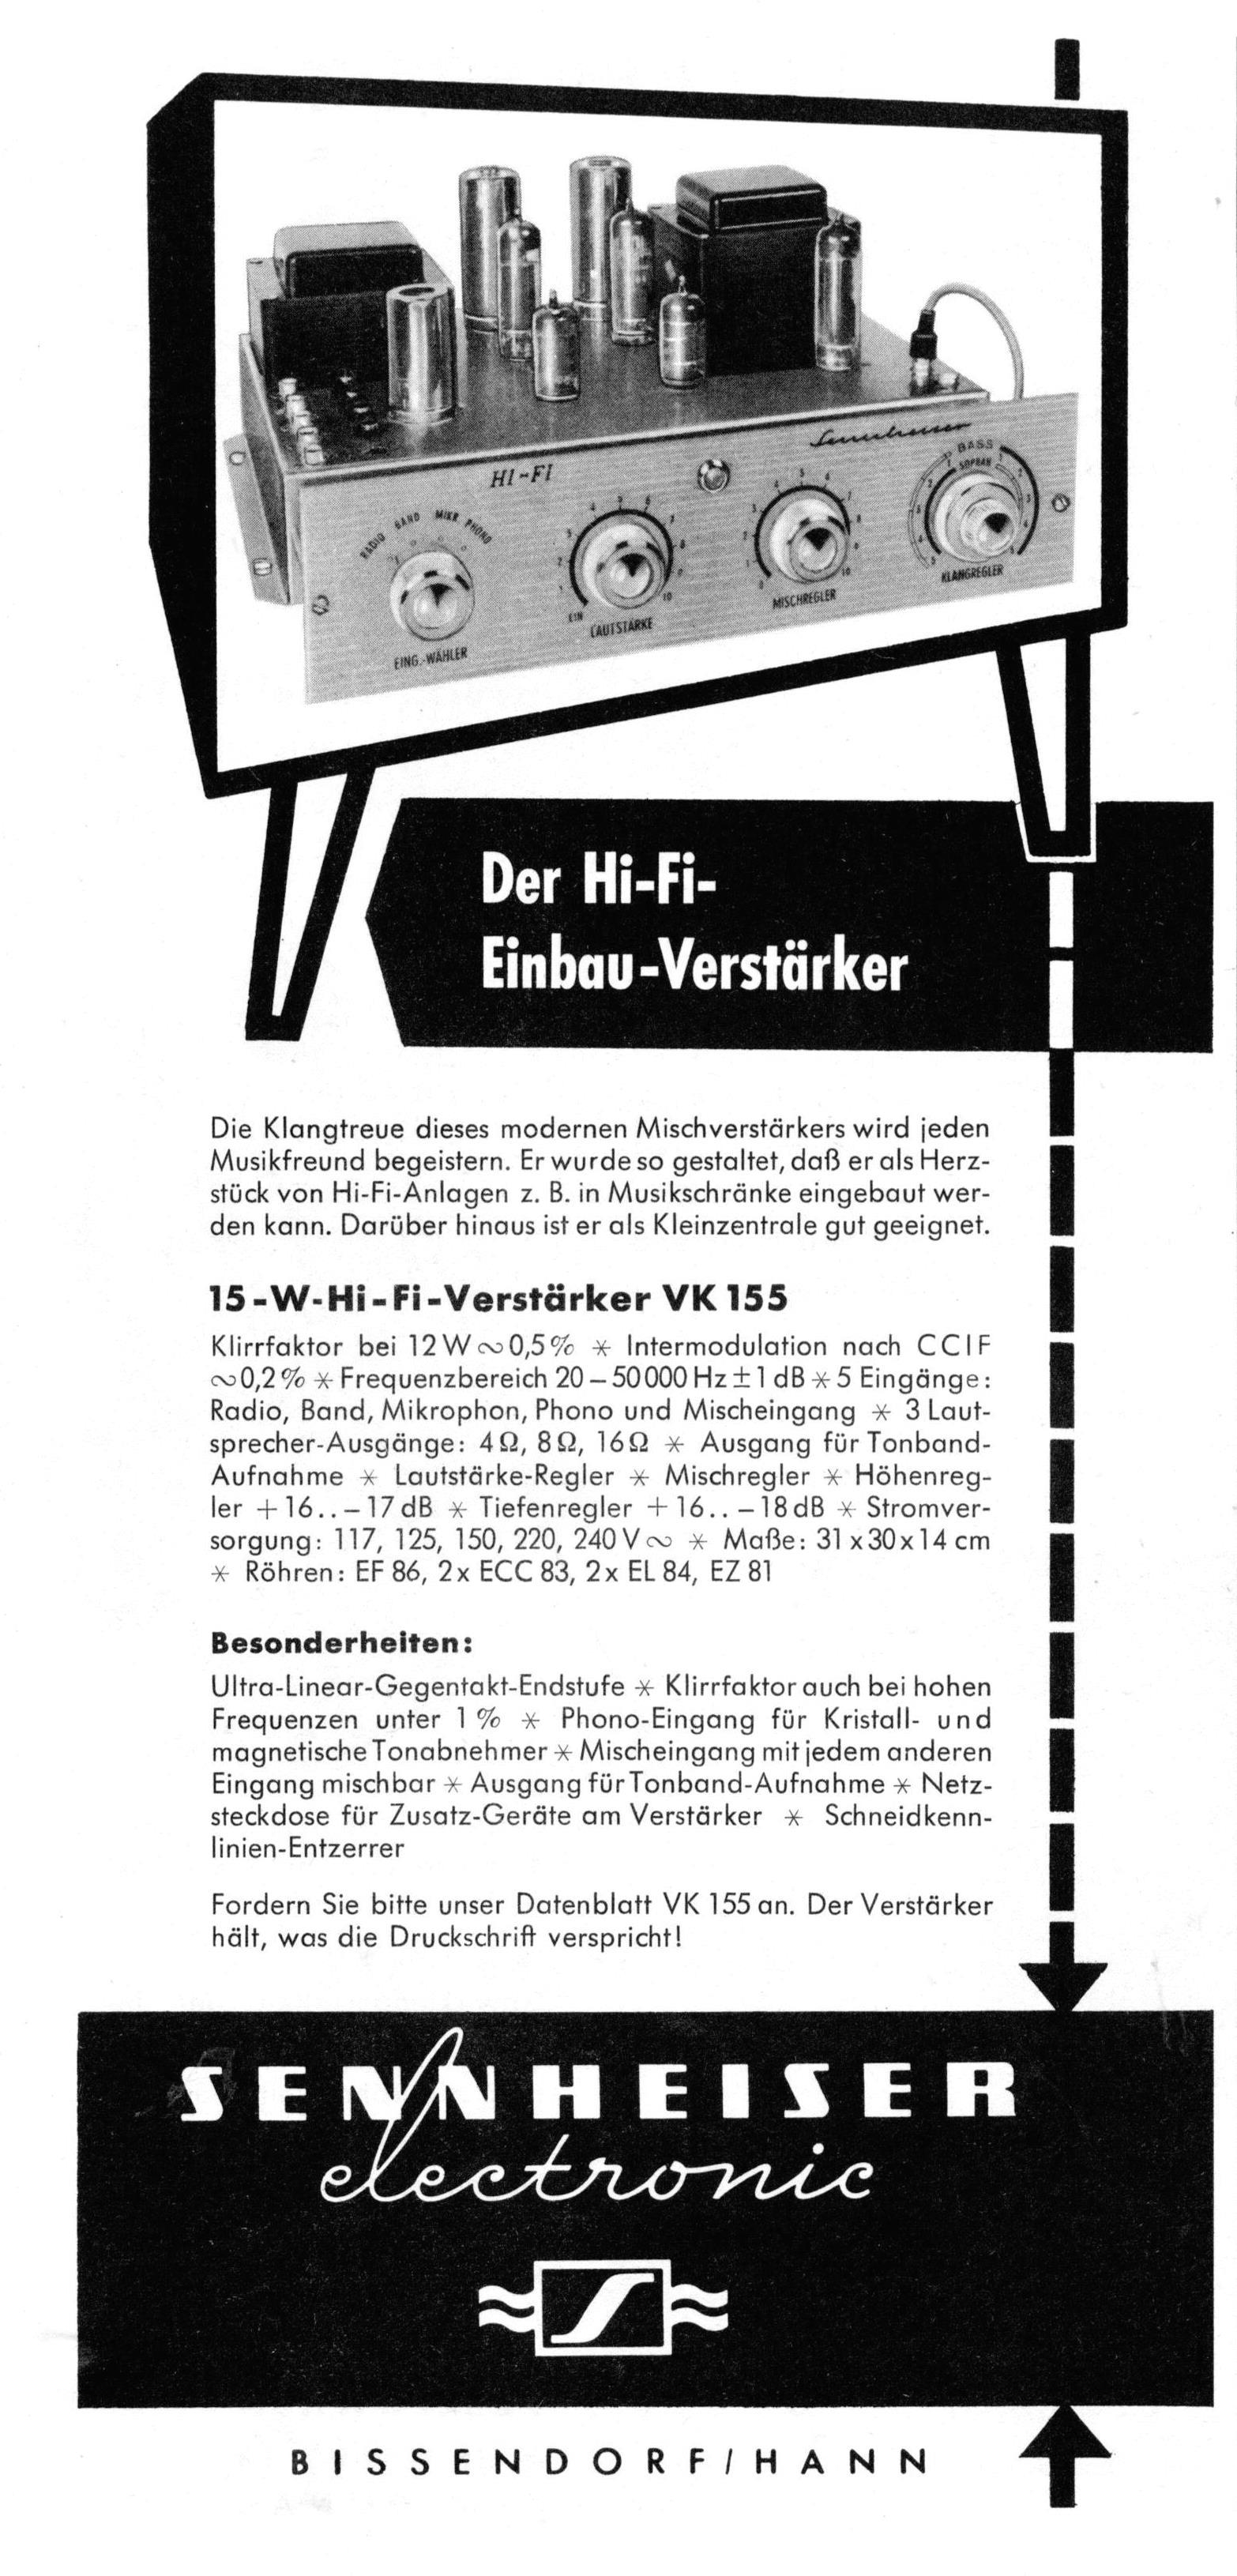 Sennheister 1958 3.jpg